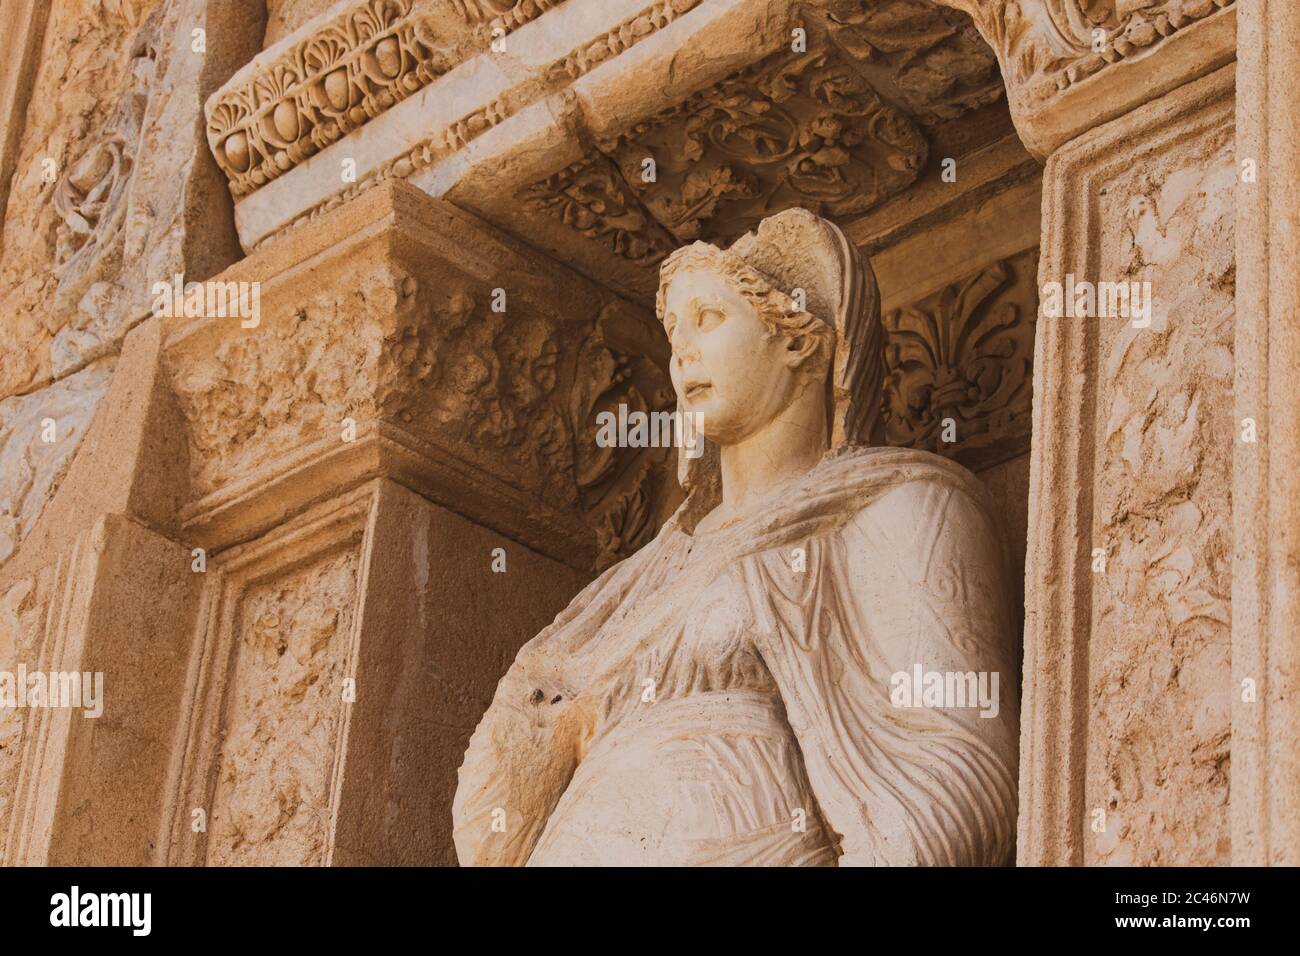 Statue d'Arete (vertu/valor) qui est située sur la façade de la bibliothèque de Celsus dans la ville grecque ancienne d'Ephèse, Turquie. Banque D'Images